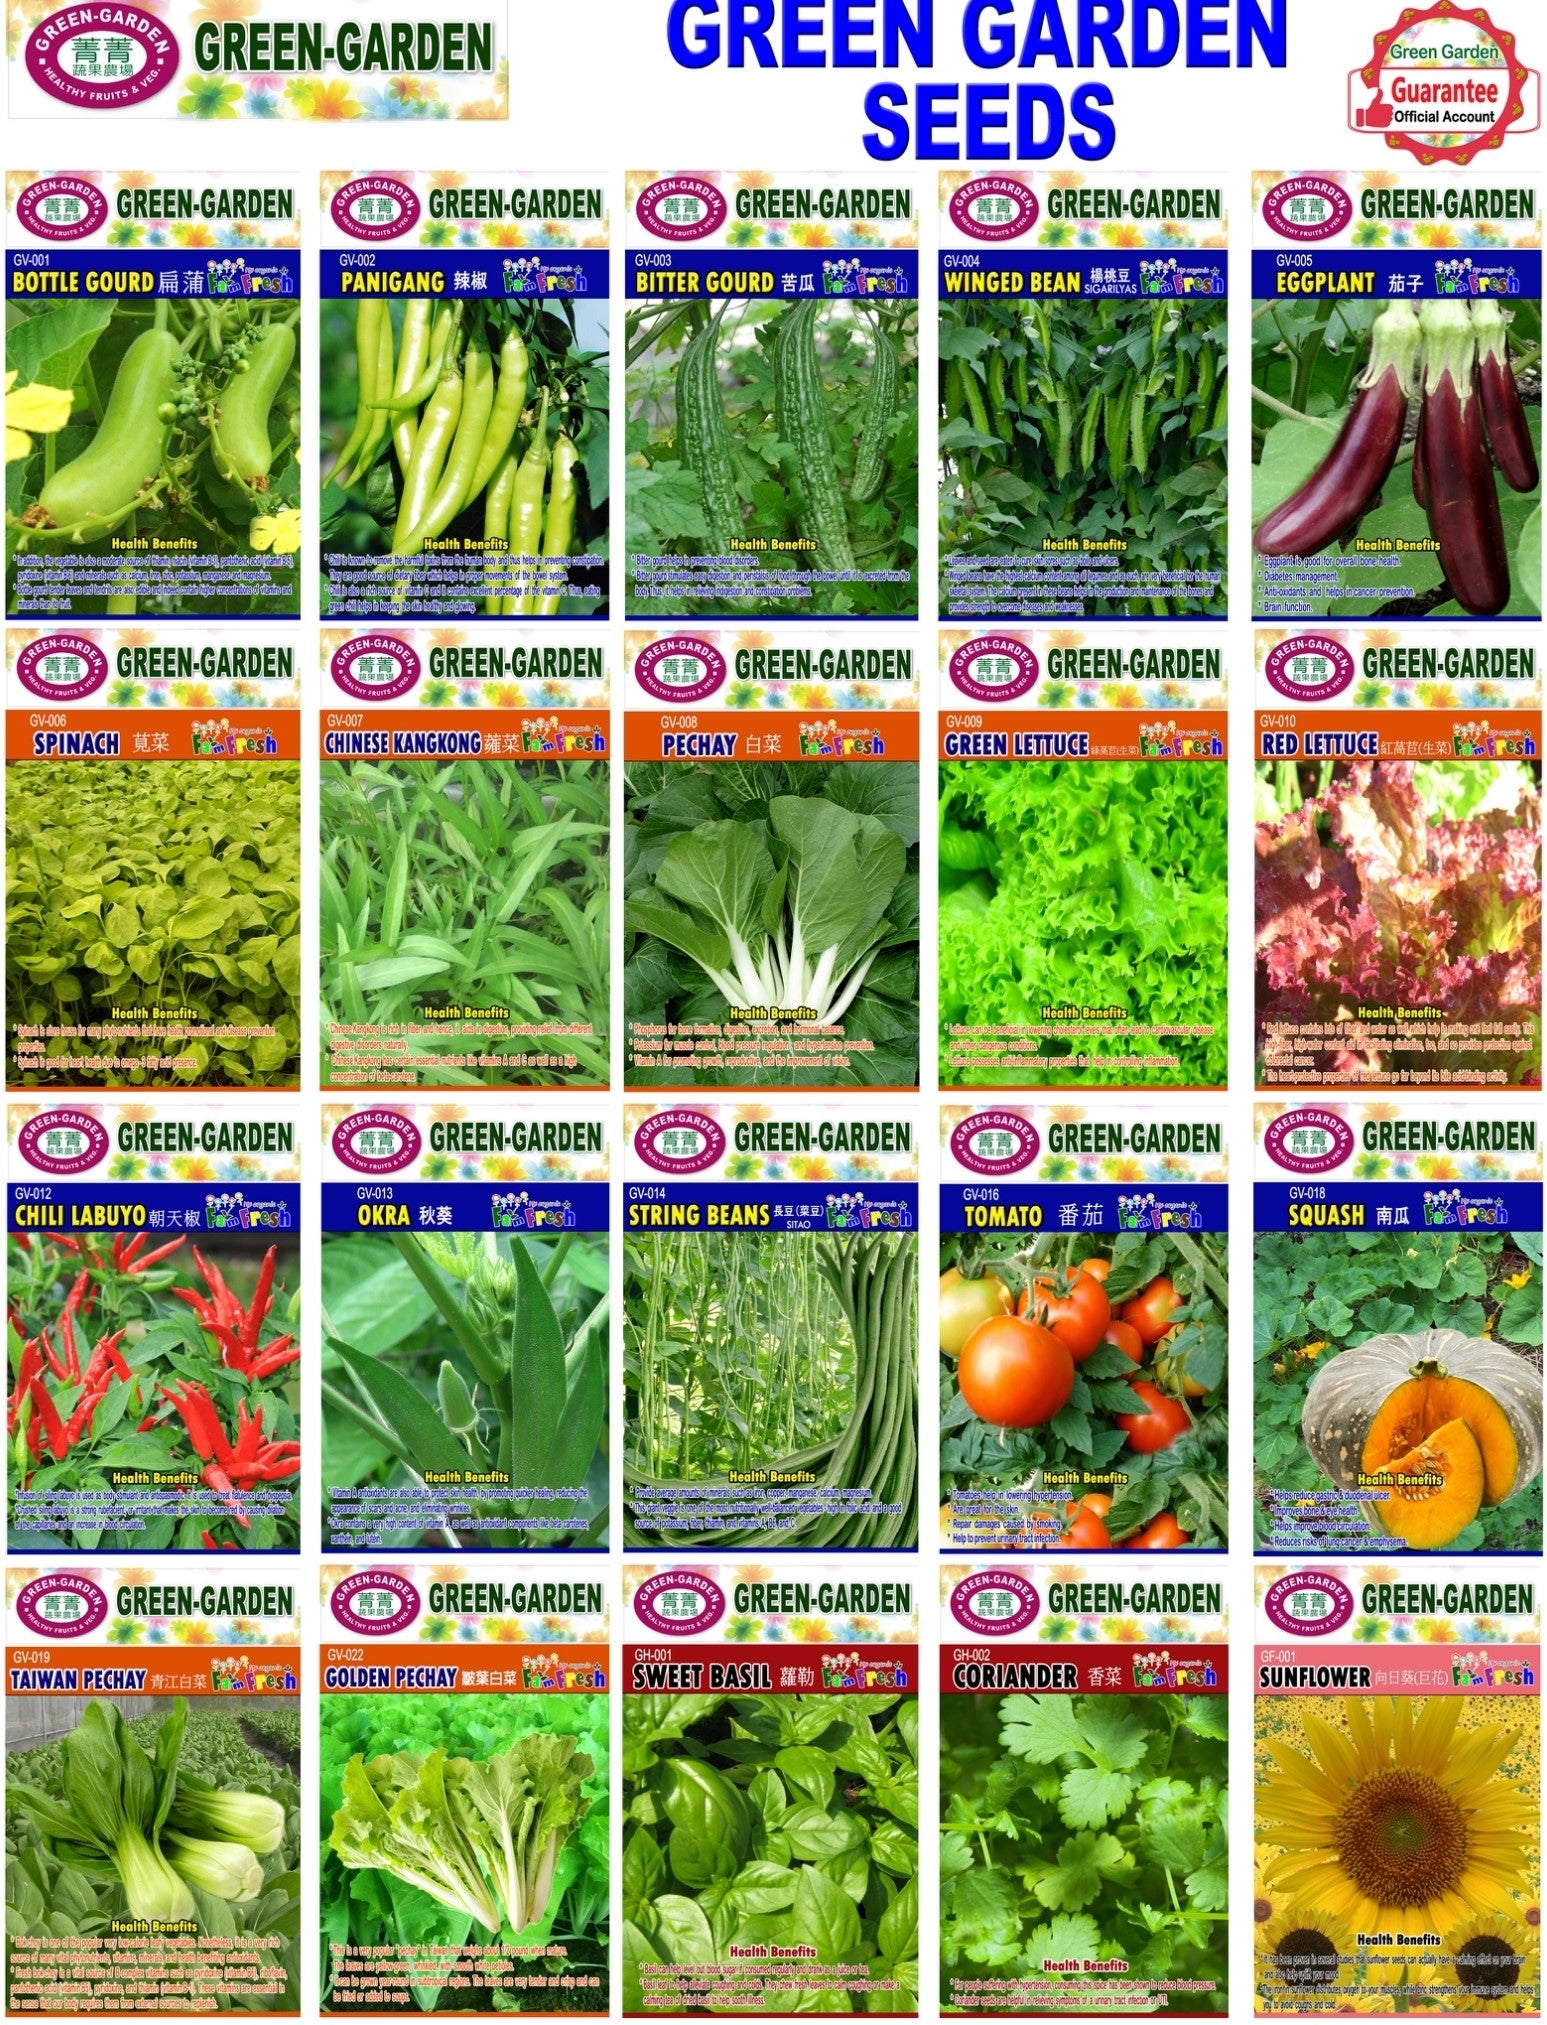 Green Garden Vegetable Seeds (GV-014 String Beans)